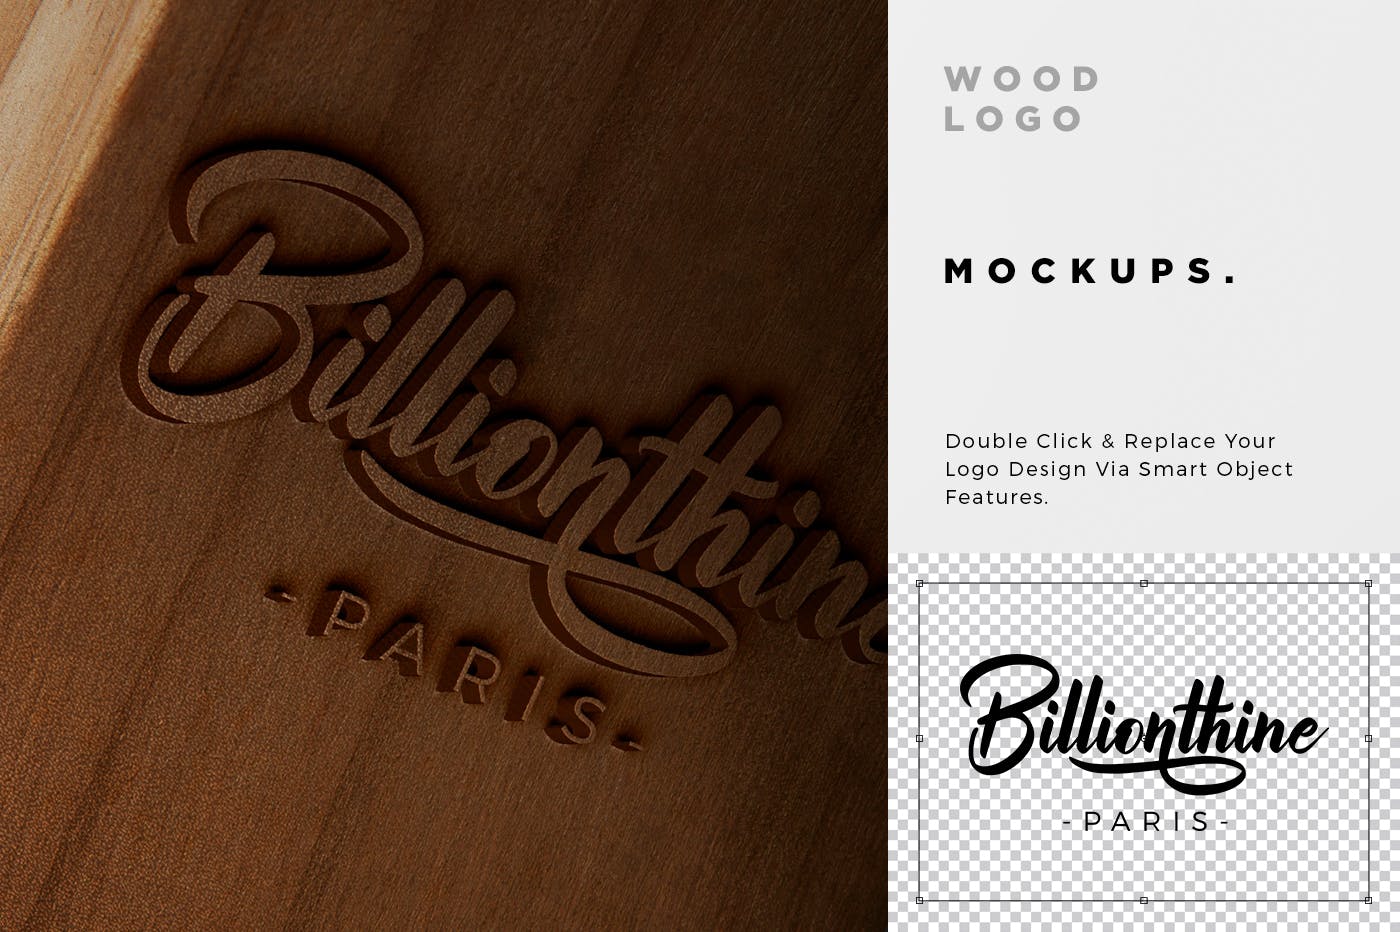 木刻/实木雕刻Logo效果图样机模板 Wood Logo Mockups插图(4)